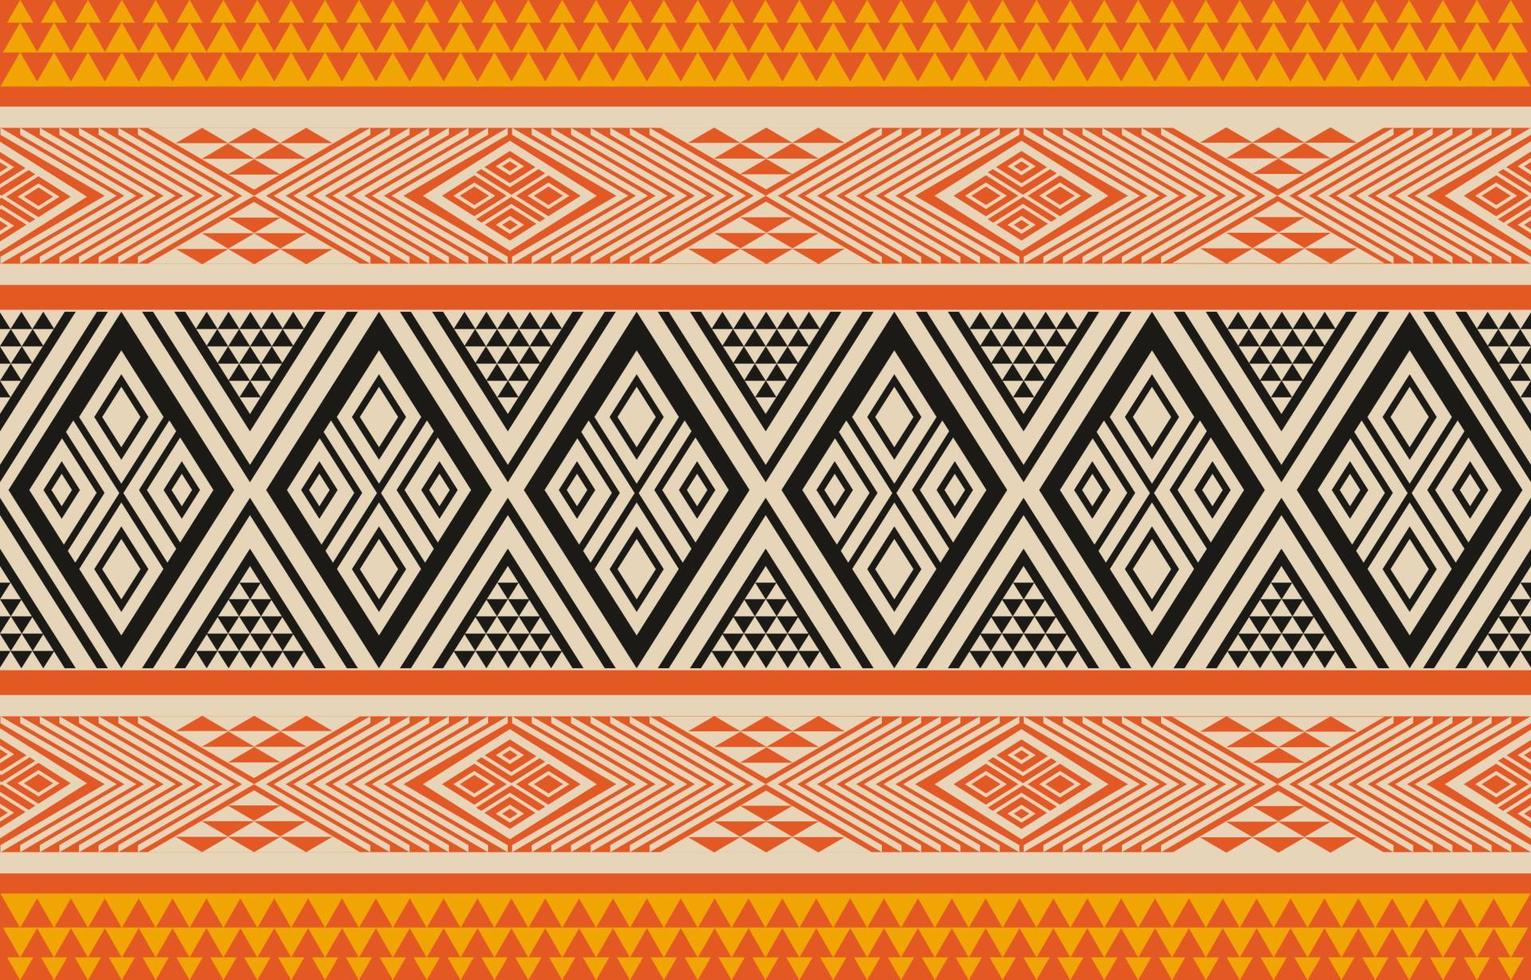 Dreieck geometrisches Muster bunt, Stammes-ethnischer Texturstil, Design zum Bedrucken von Produkten, Hintergrund, Schal, Kleidung, Verpackung, Stoff, Vektorillustration. vektor